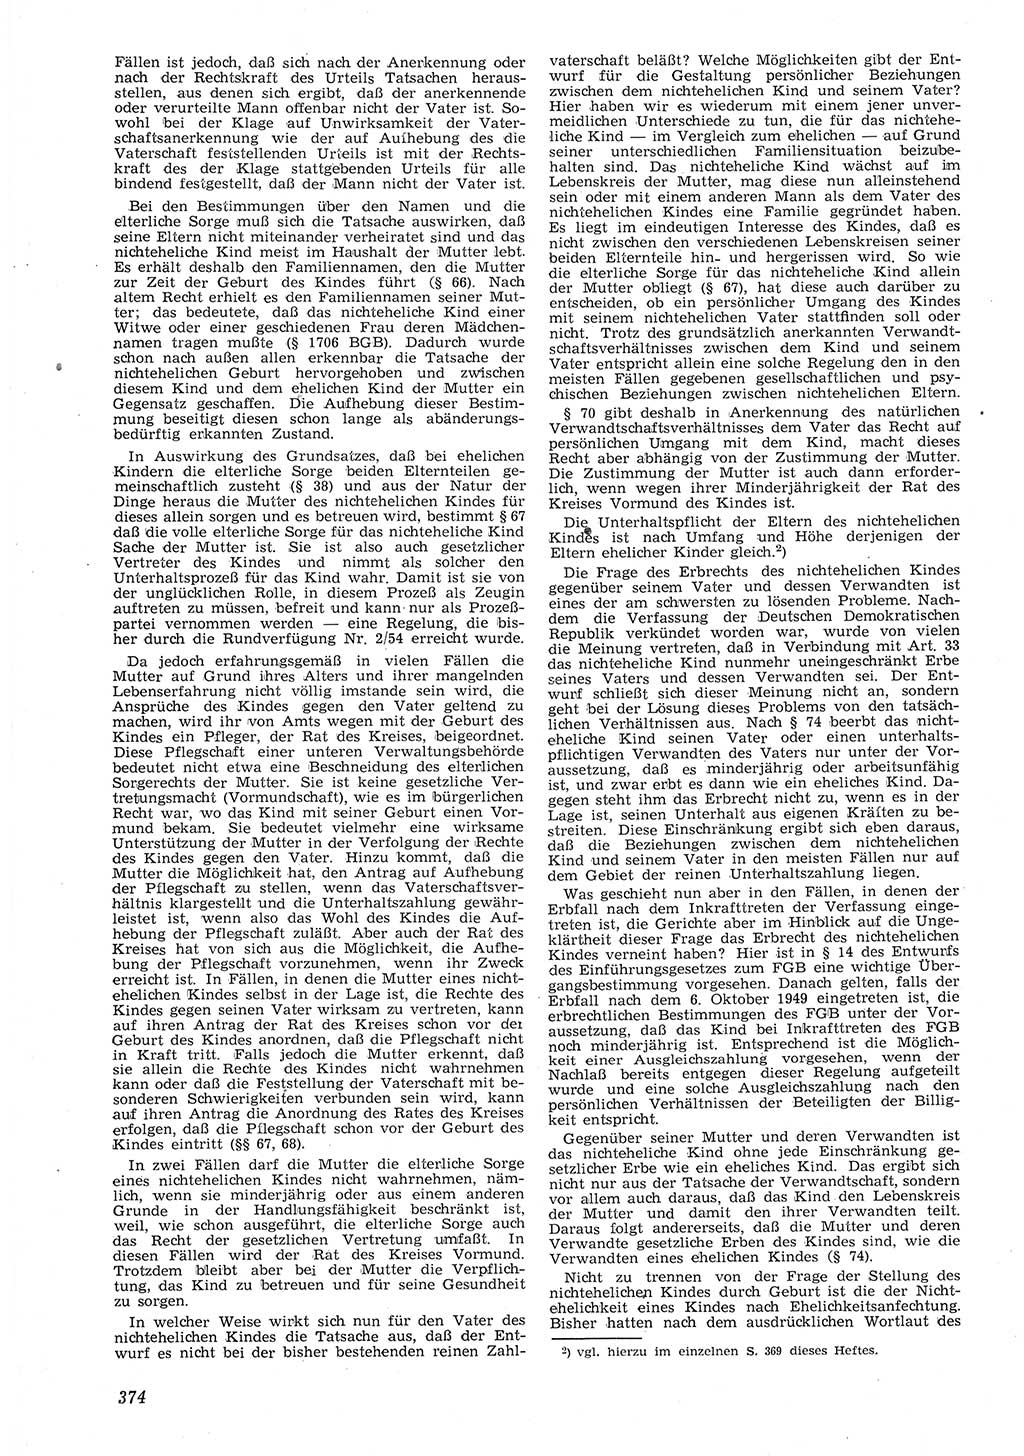 Neue Justiz (NJ), Zeitschrift für Recht und Rechtswissenschaft [Deutsche Demokratische Republik (DDR)], 8. Jahrgang 1954, Seite 374 (NJ DDR 1954, S. 374)